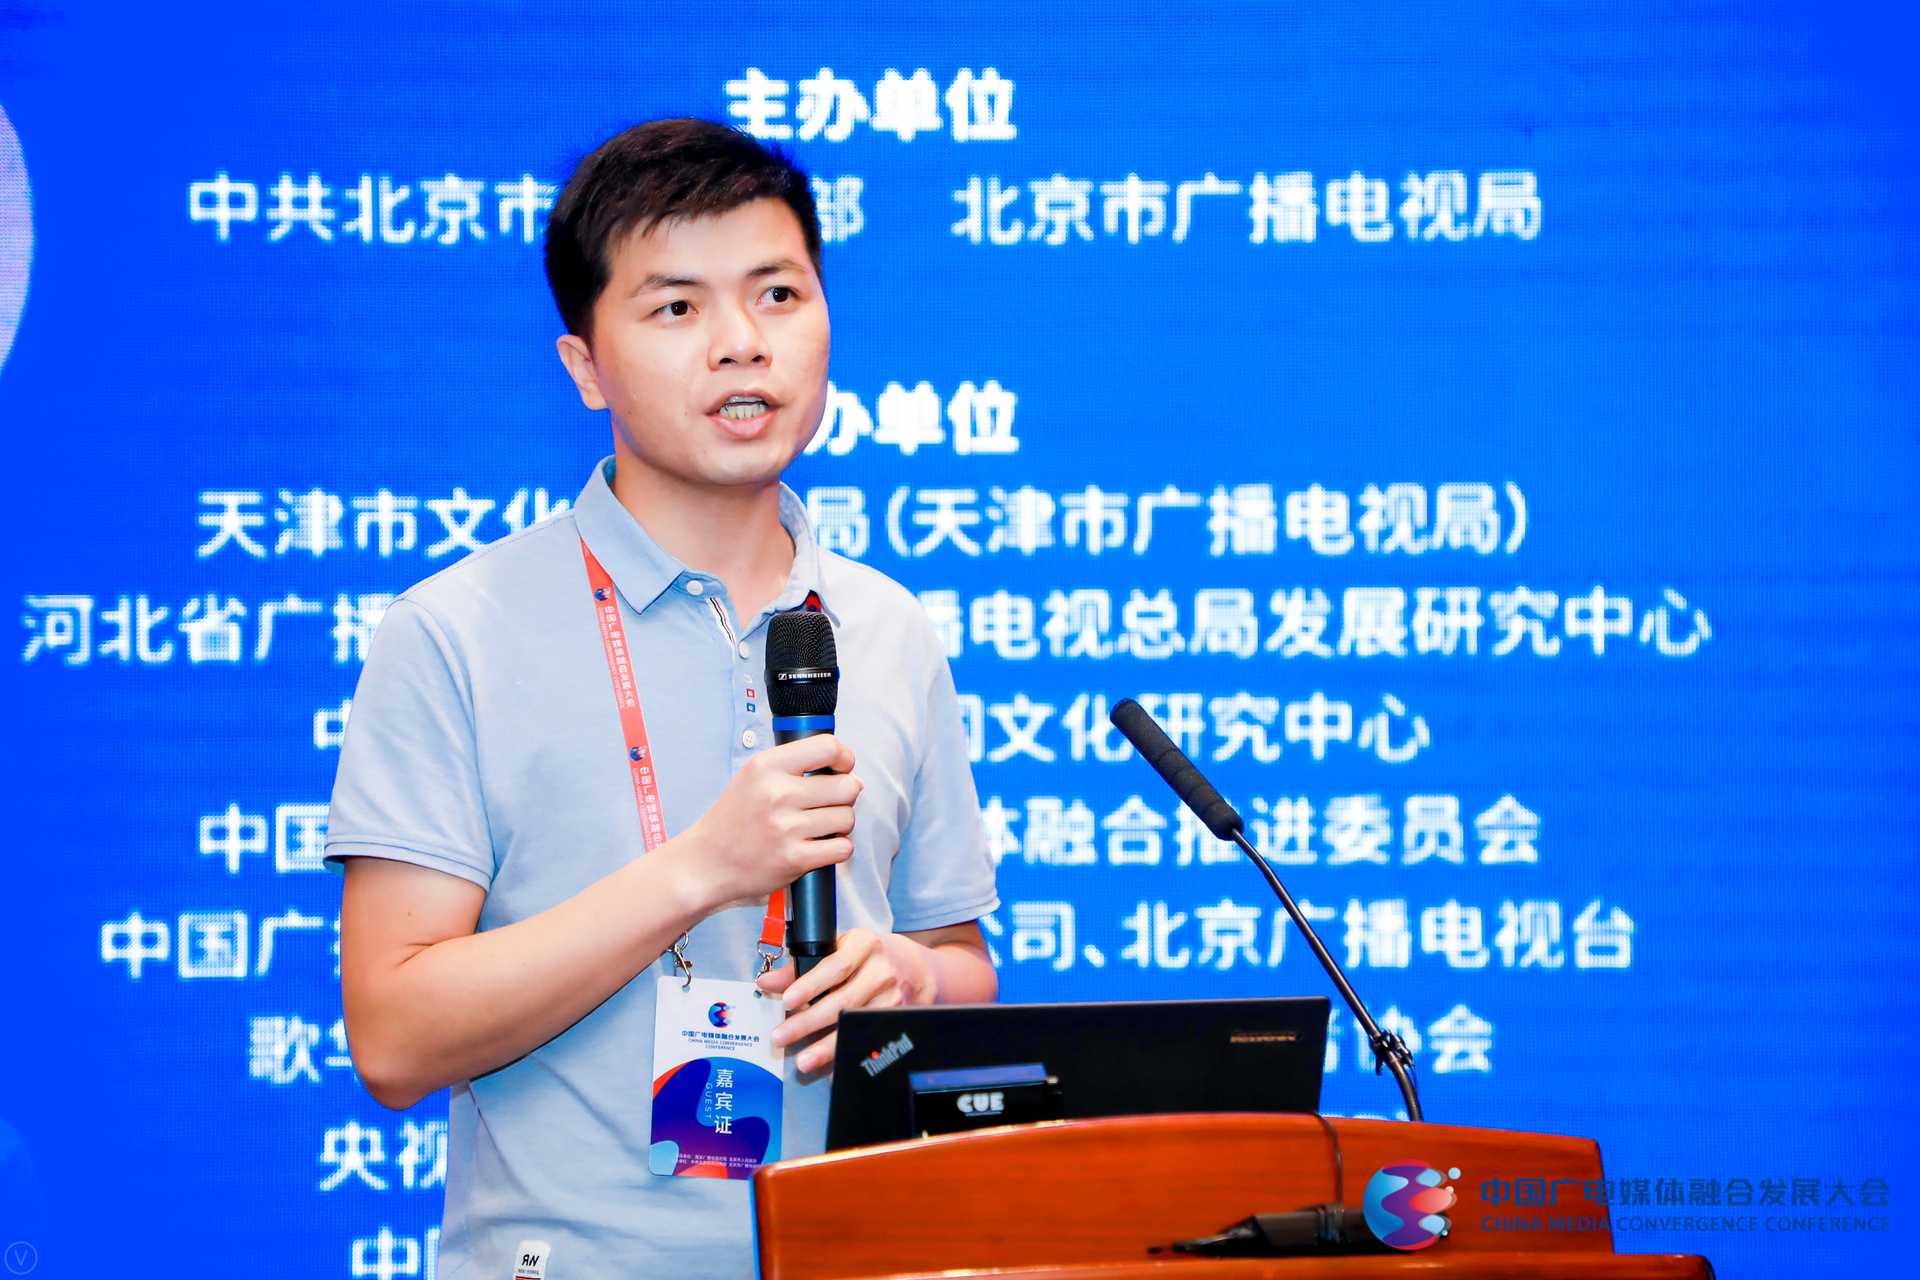 谭志洪:“融媒+” 助力打造基层社会治理新平台